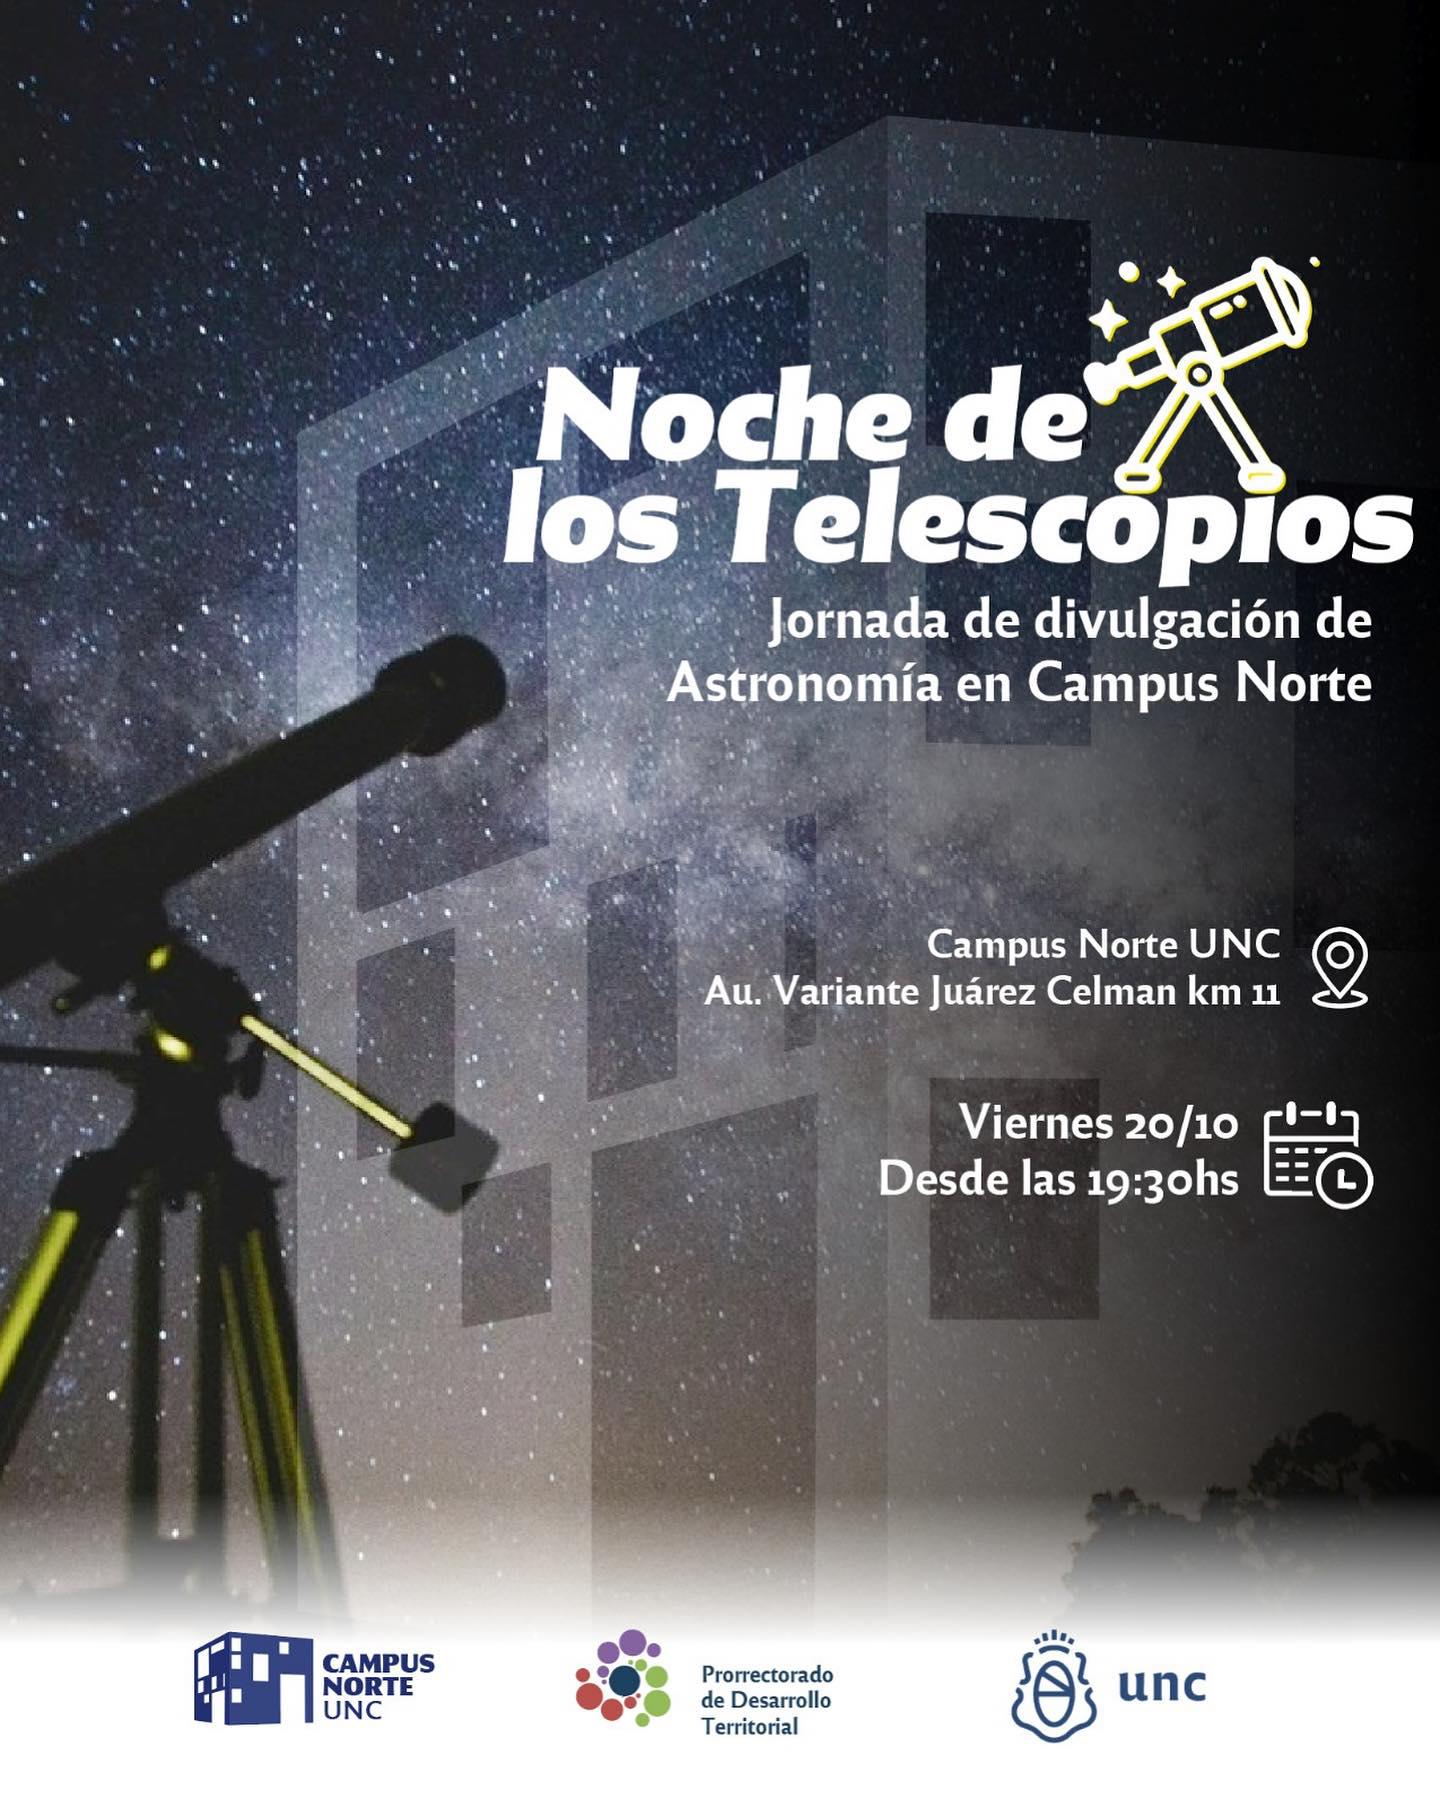 ¡Llega la noche de los telescopios a Córdoba! • Canal C